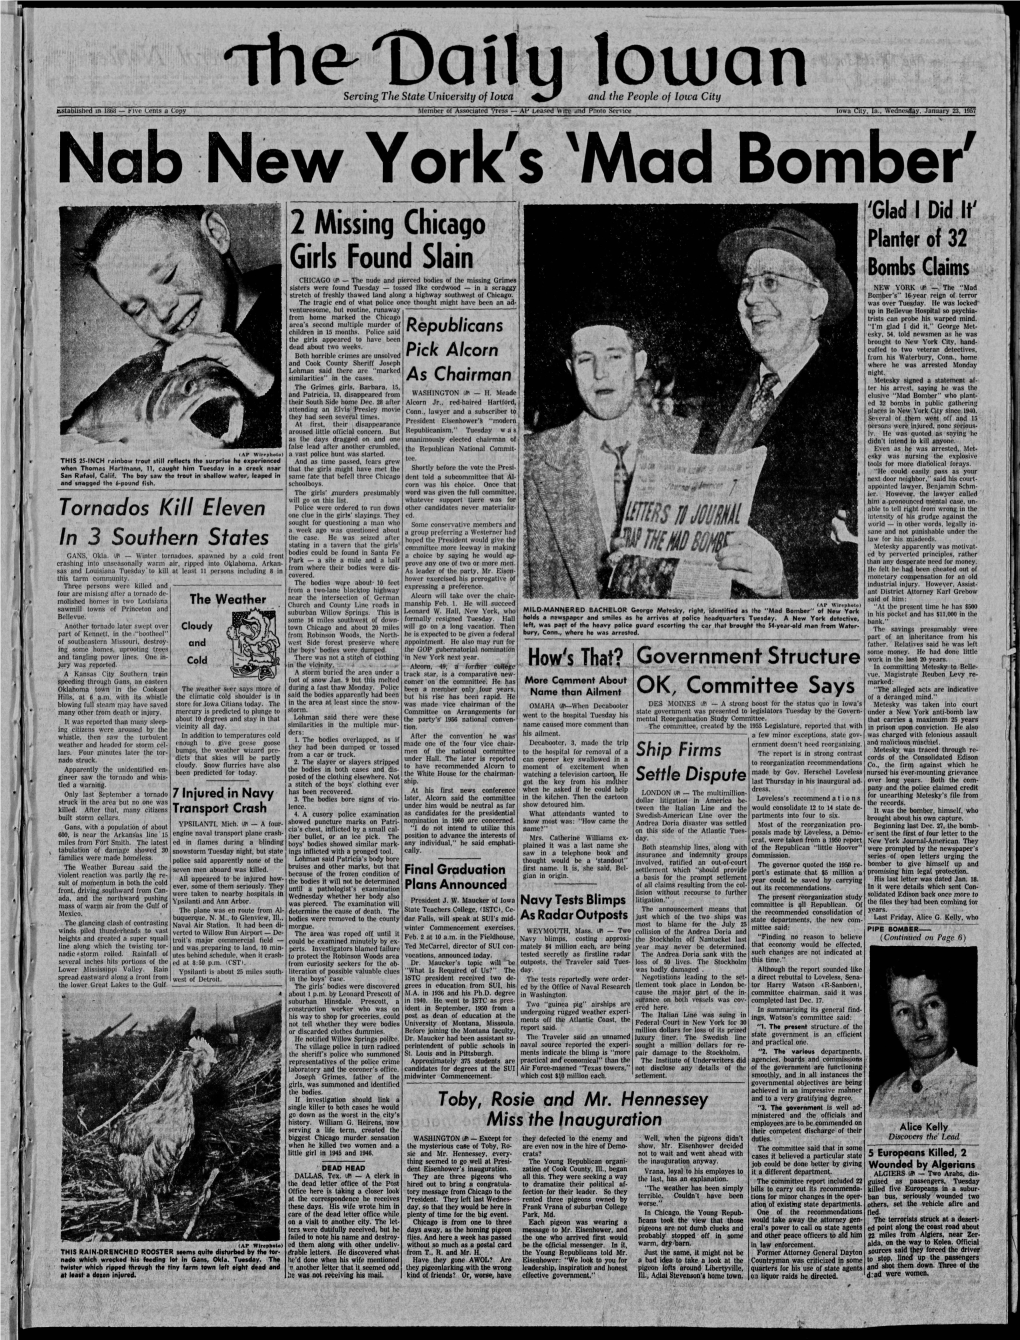 Daily Iowan (Iowa City, Iowa), 1957-01-23